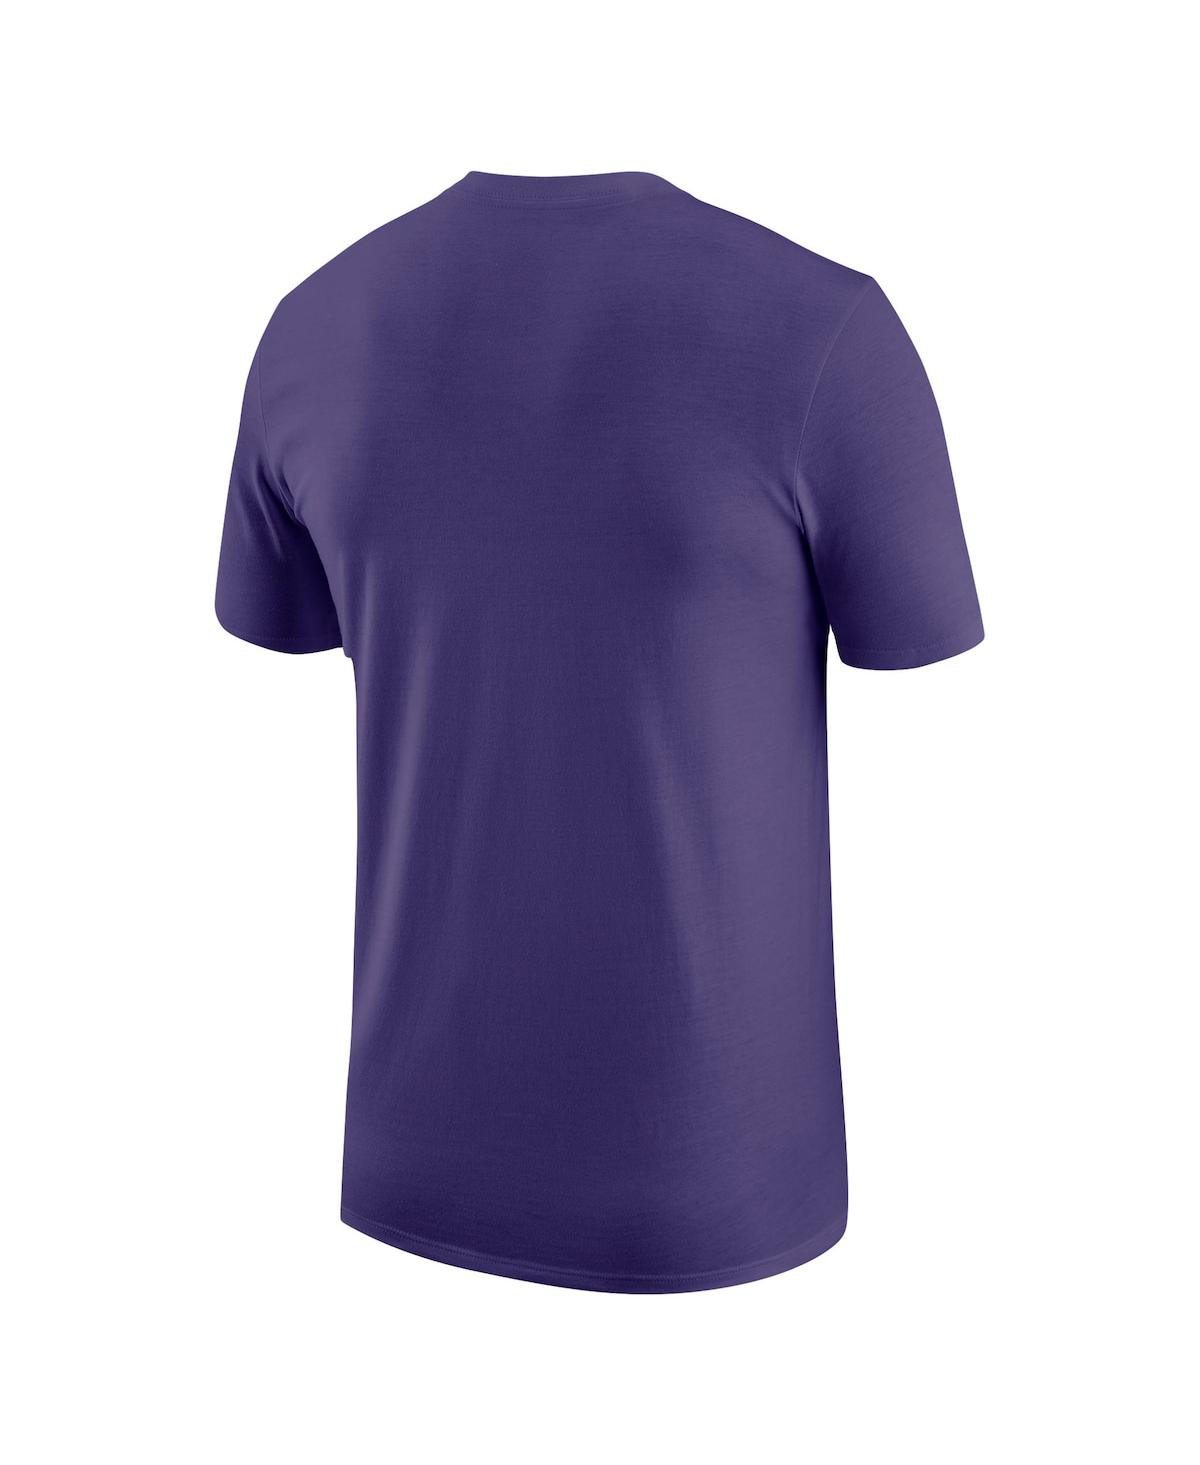 Shop Jordan Men's  Purple Phoenix Suns Essential T-shirt